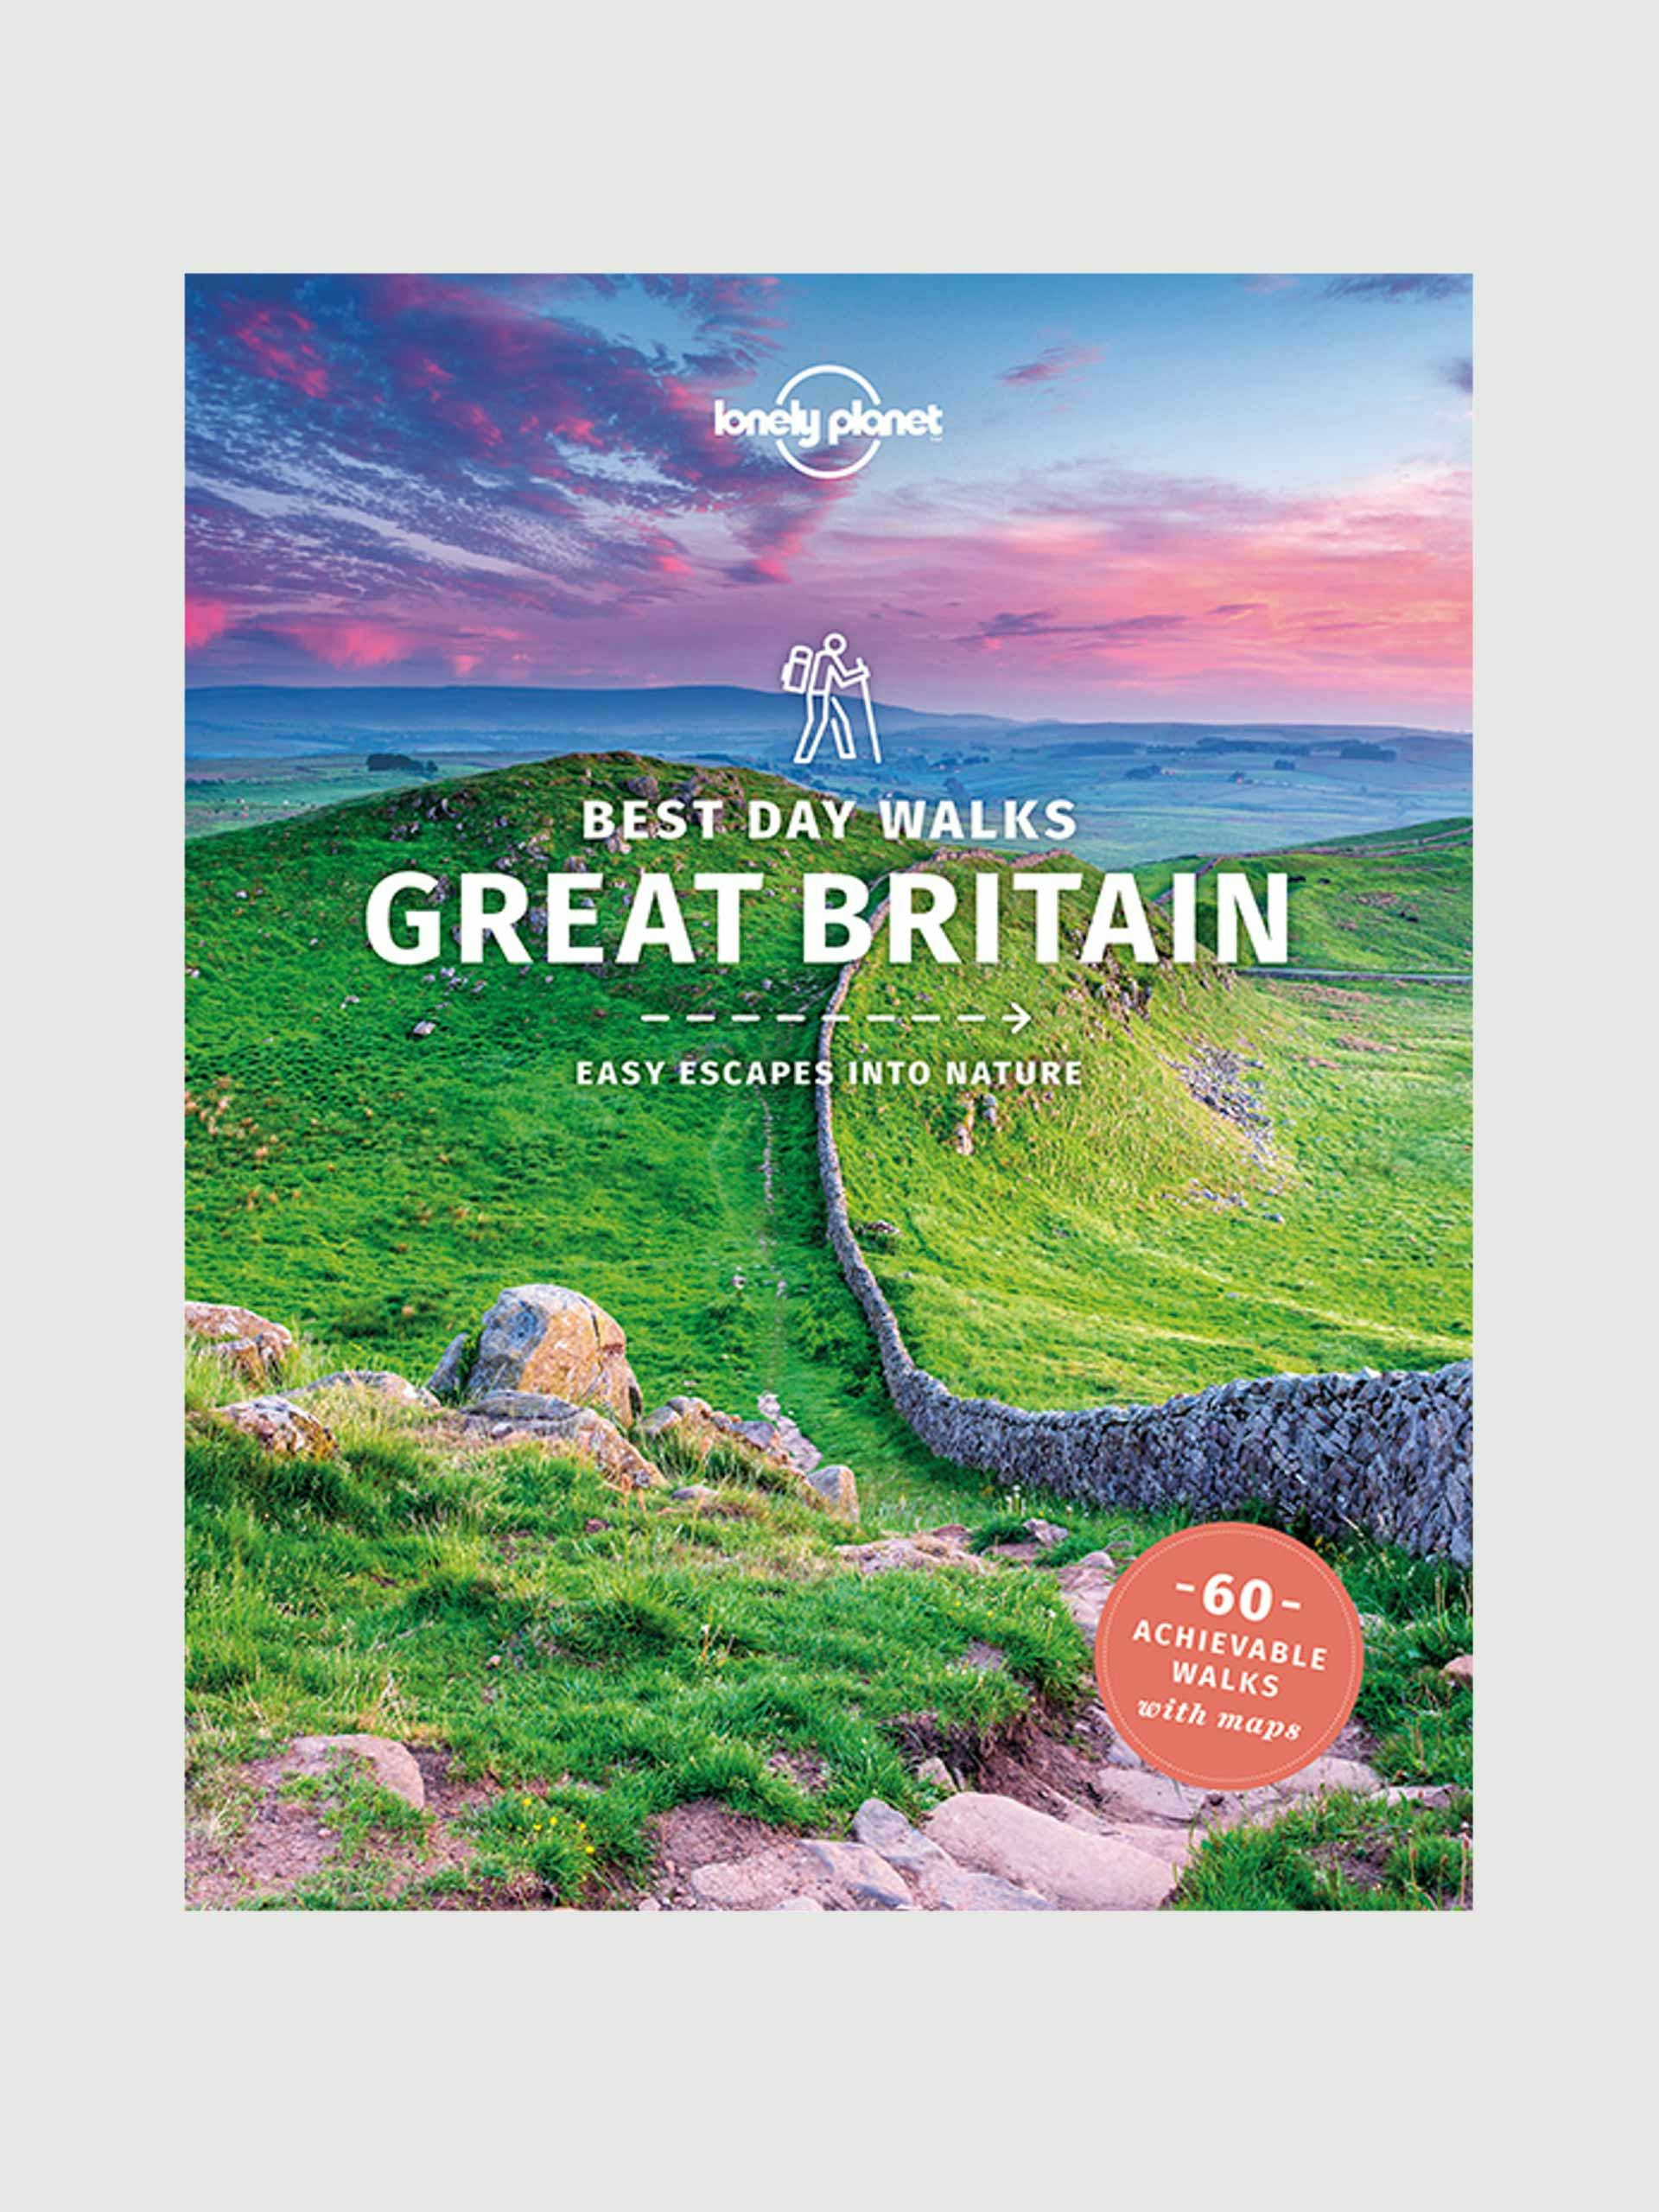 Best Day Walks Great Britain' book